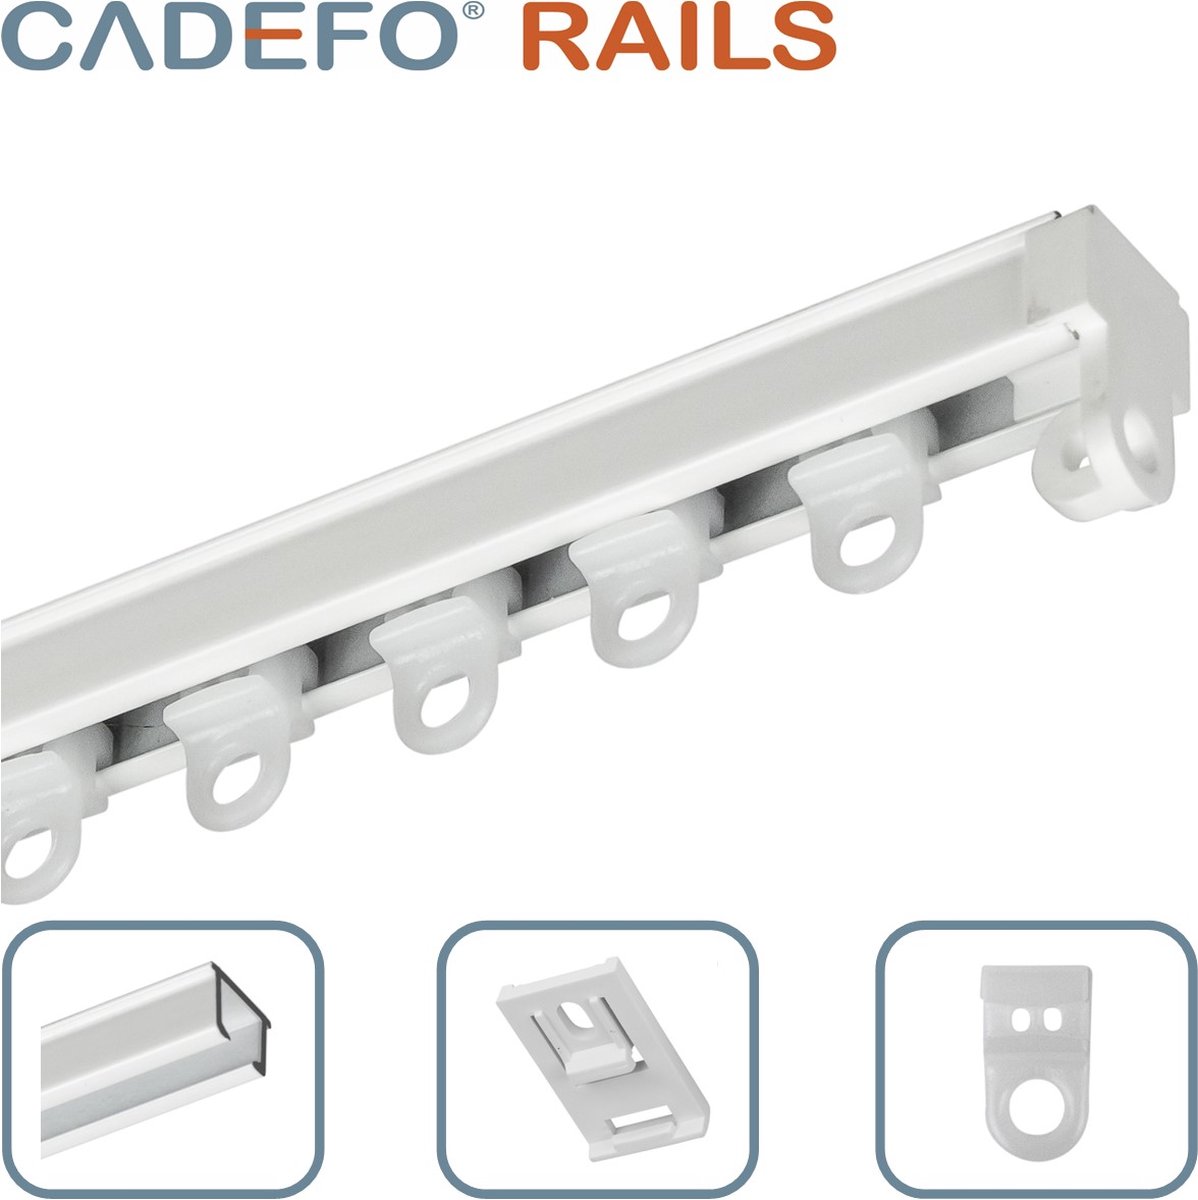 CADEFO RAILS (351 - 400 cm) Gordijnrails - Compleet op maat! - UIT 1 STUK - Leverbaar tot 6 meter - Plafondbevestiging - Lengte 368 cm